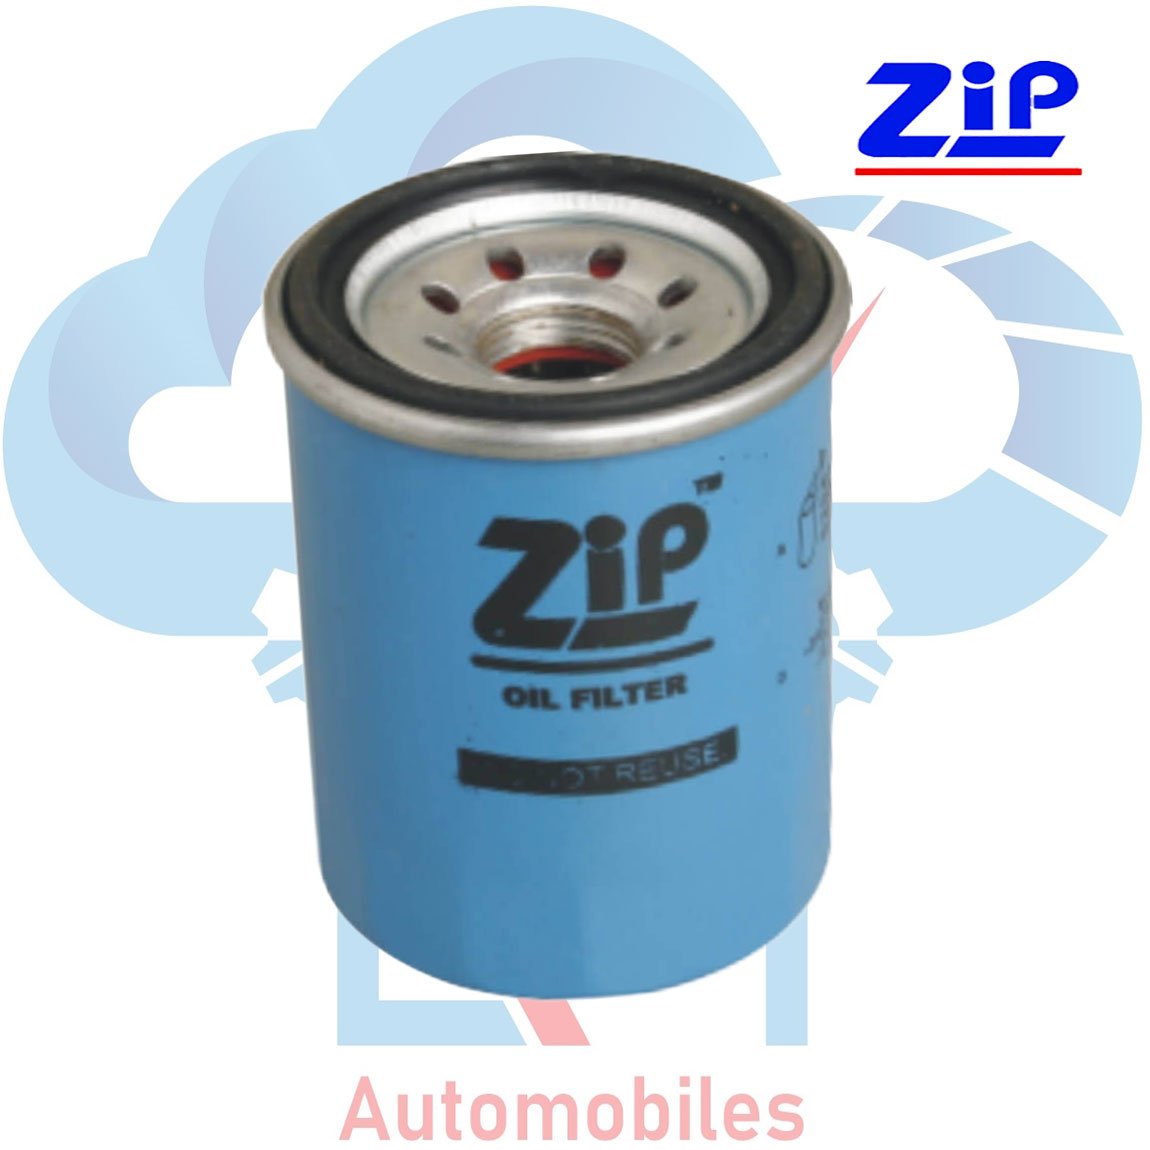 Oil Filter for Honda CR-V in Zip Filter